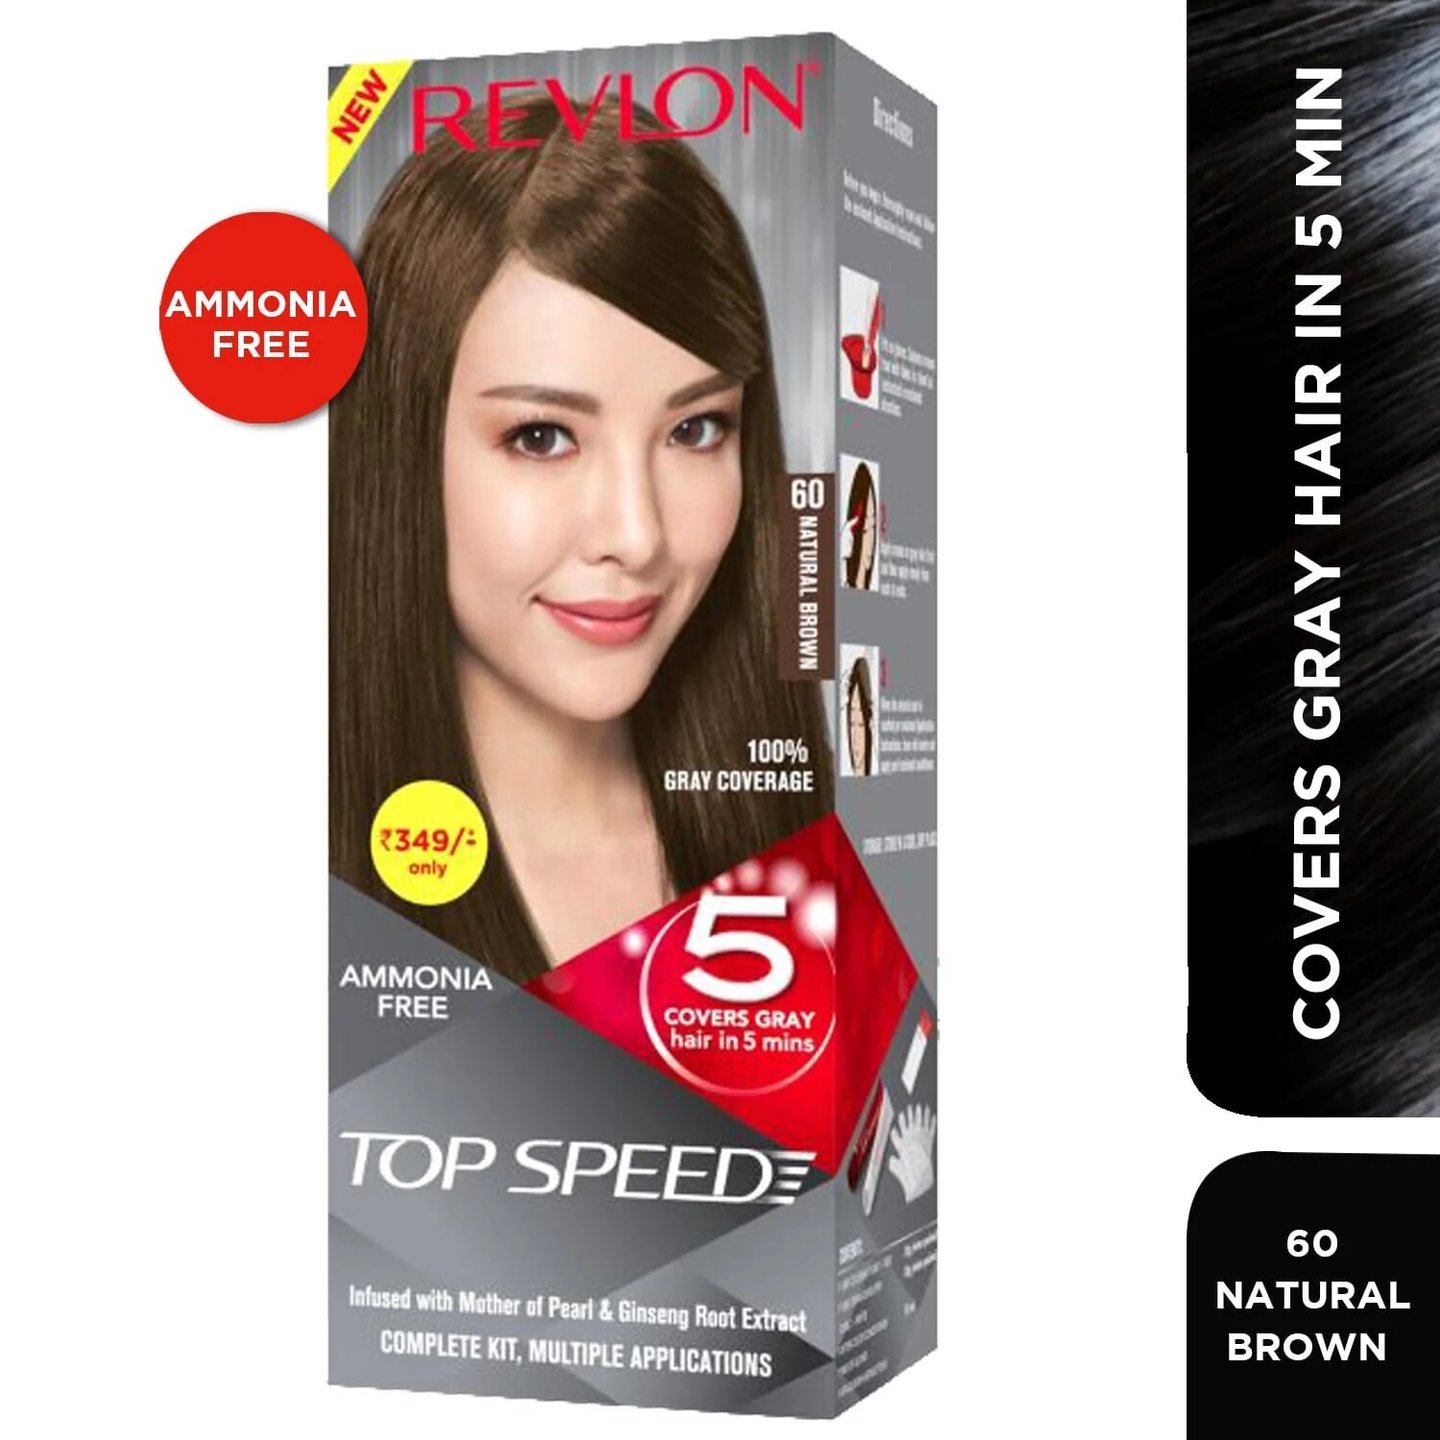 Revlon TOP SPEED MINI NATURAL BROWN 60 Hair Color